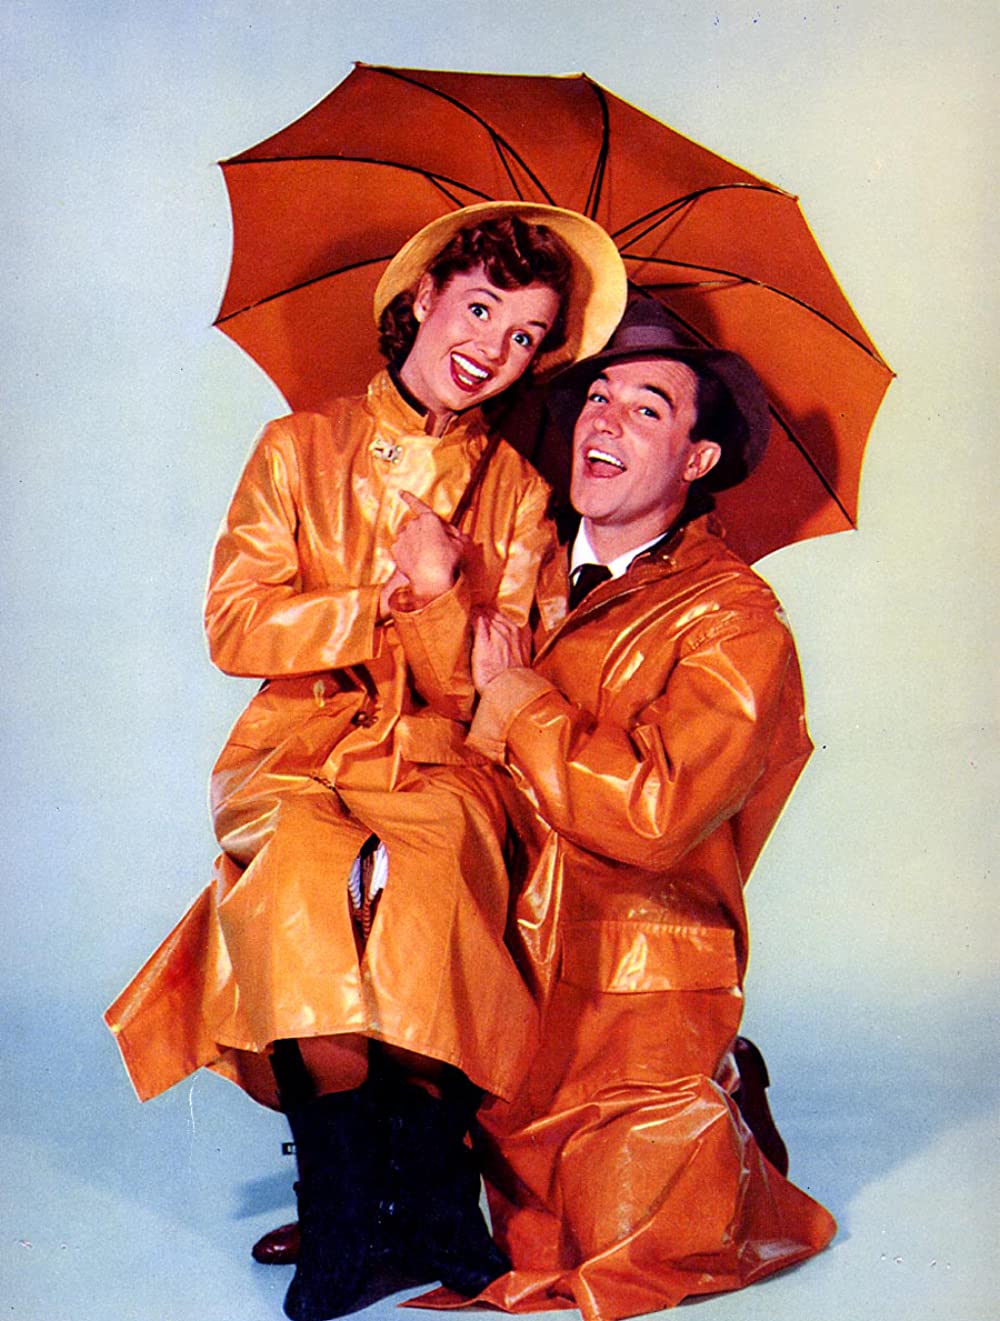 「雨に唄えば」ジーン・ケリー & デビー・レイノルズ & スタンリー・ドーネンの画像